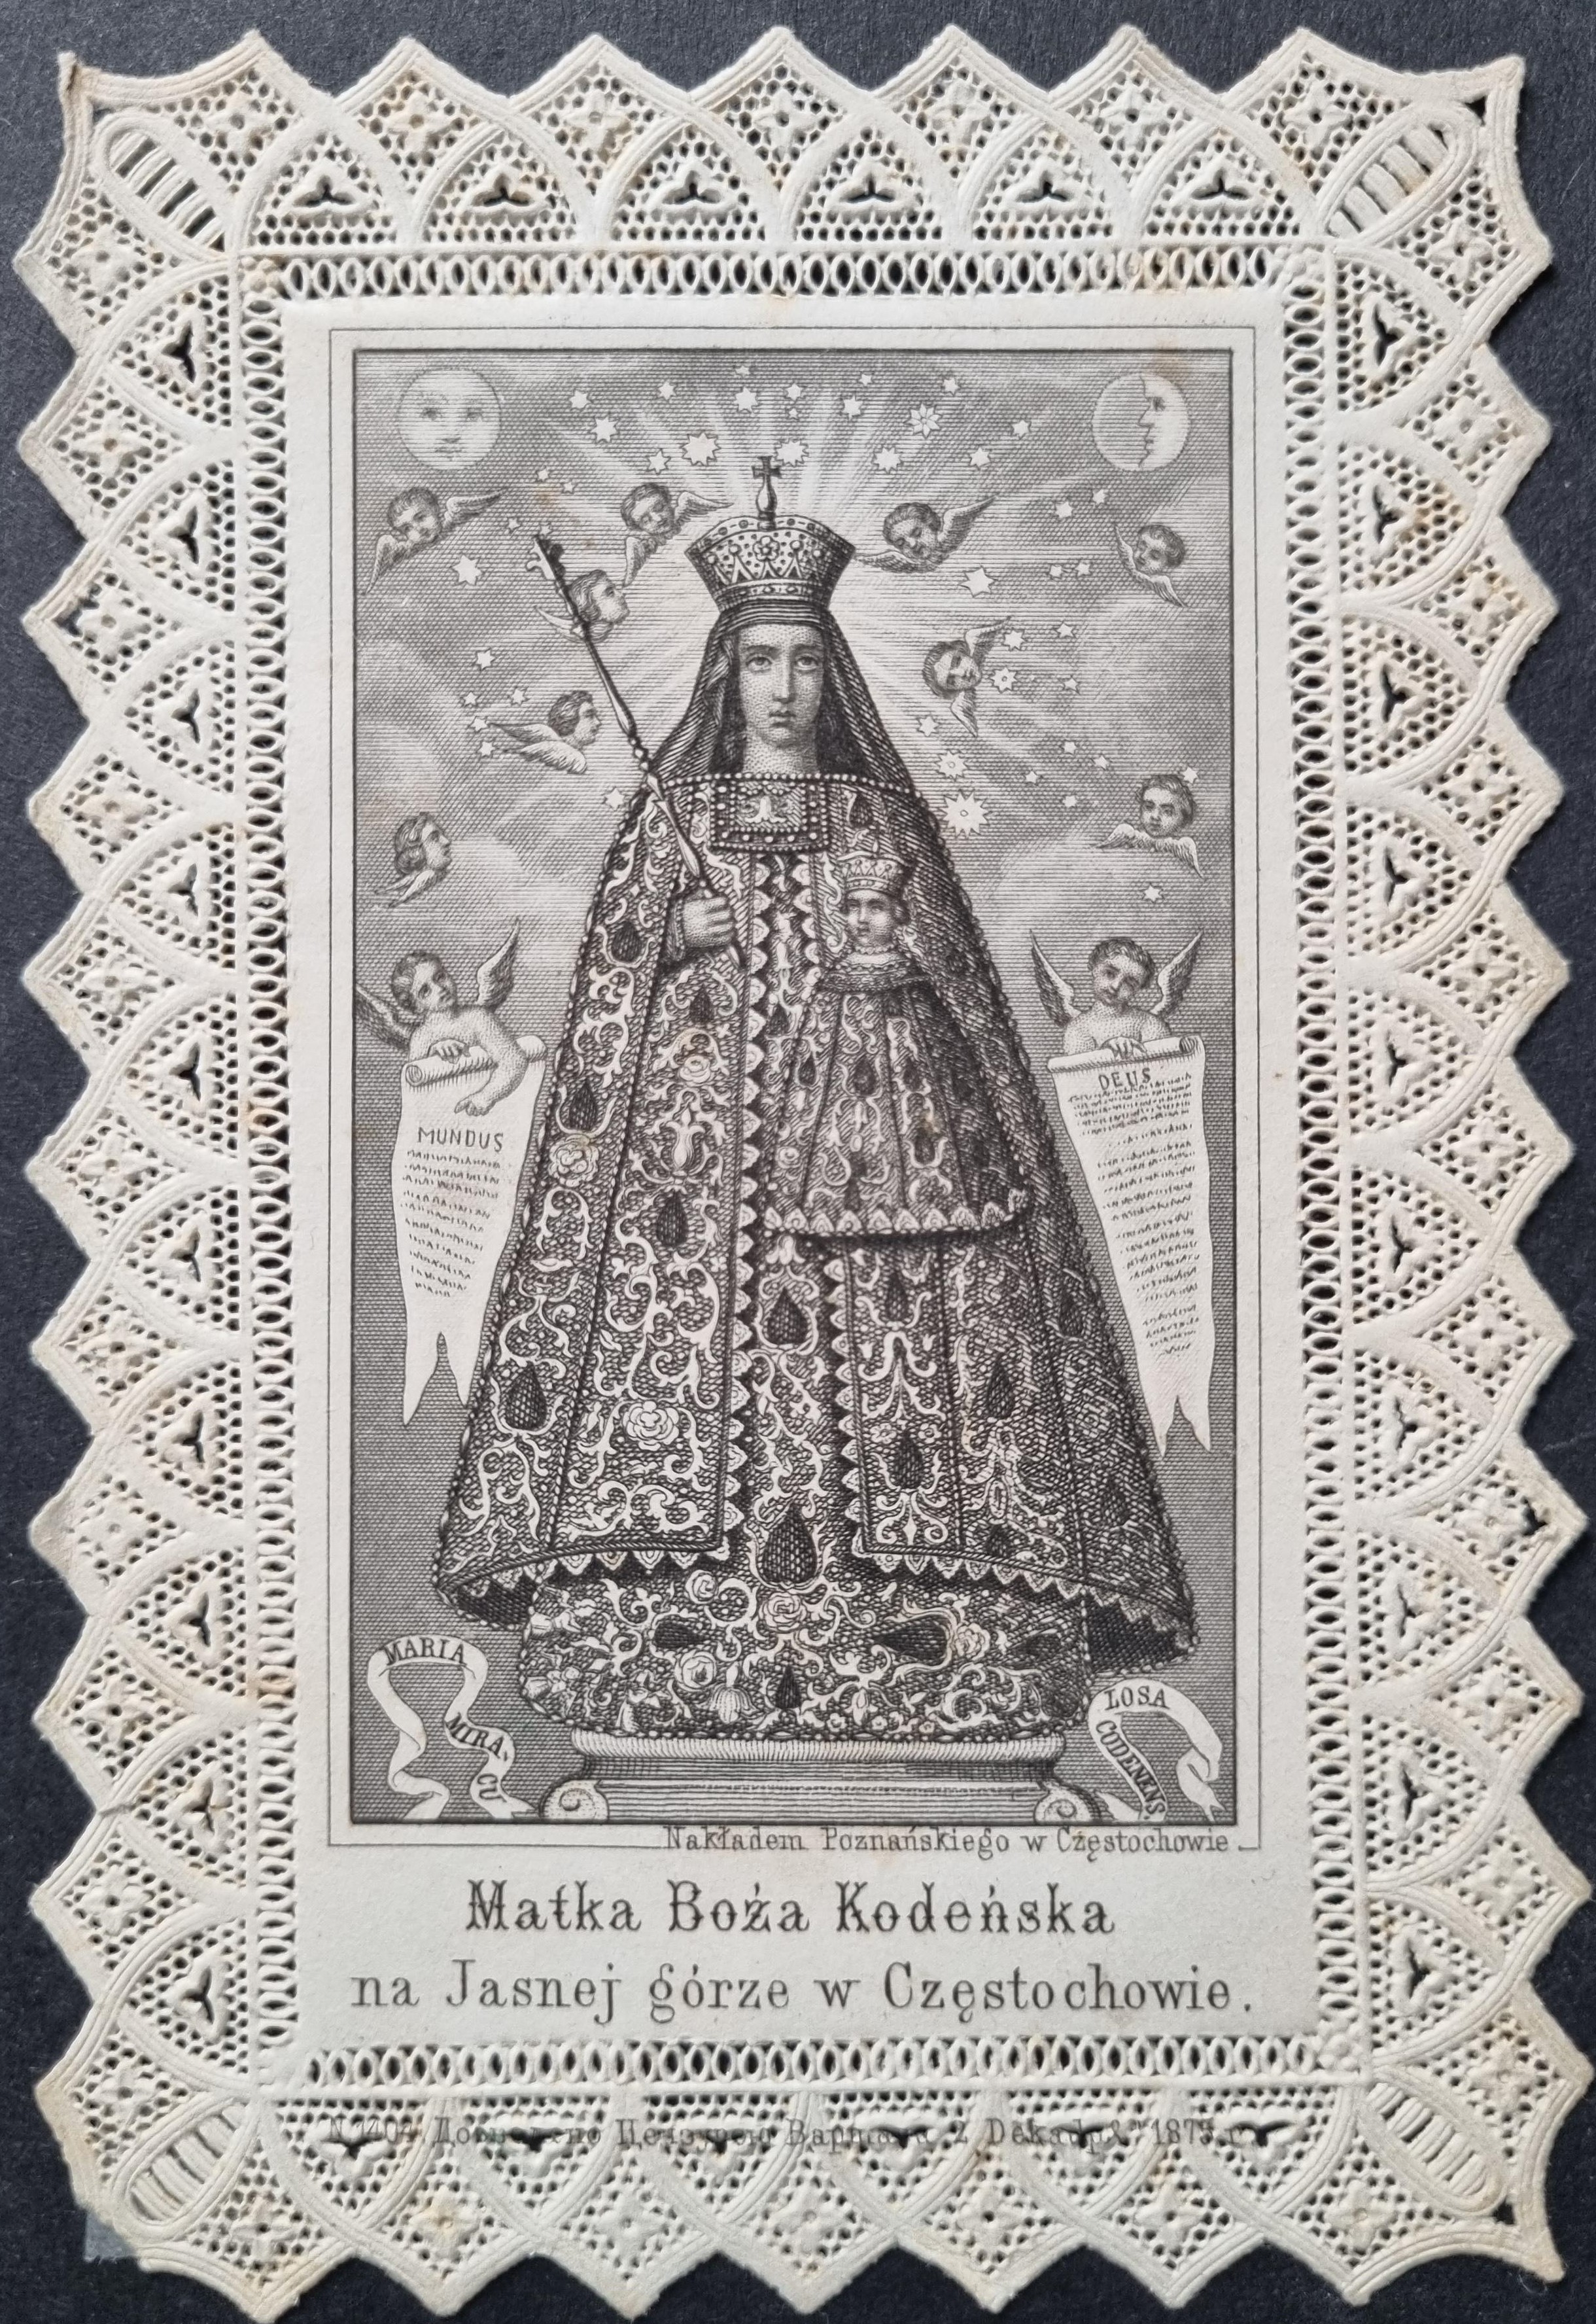 Miedzioryt Matki Boskiej Kodeńskiej, po 1875 roku, koronka, nakładem Poznańskiego w Częstochowie, źródło: zbiory własne